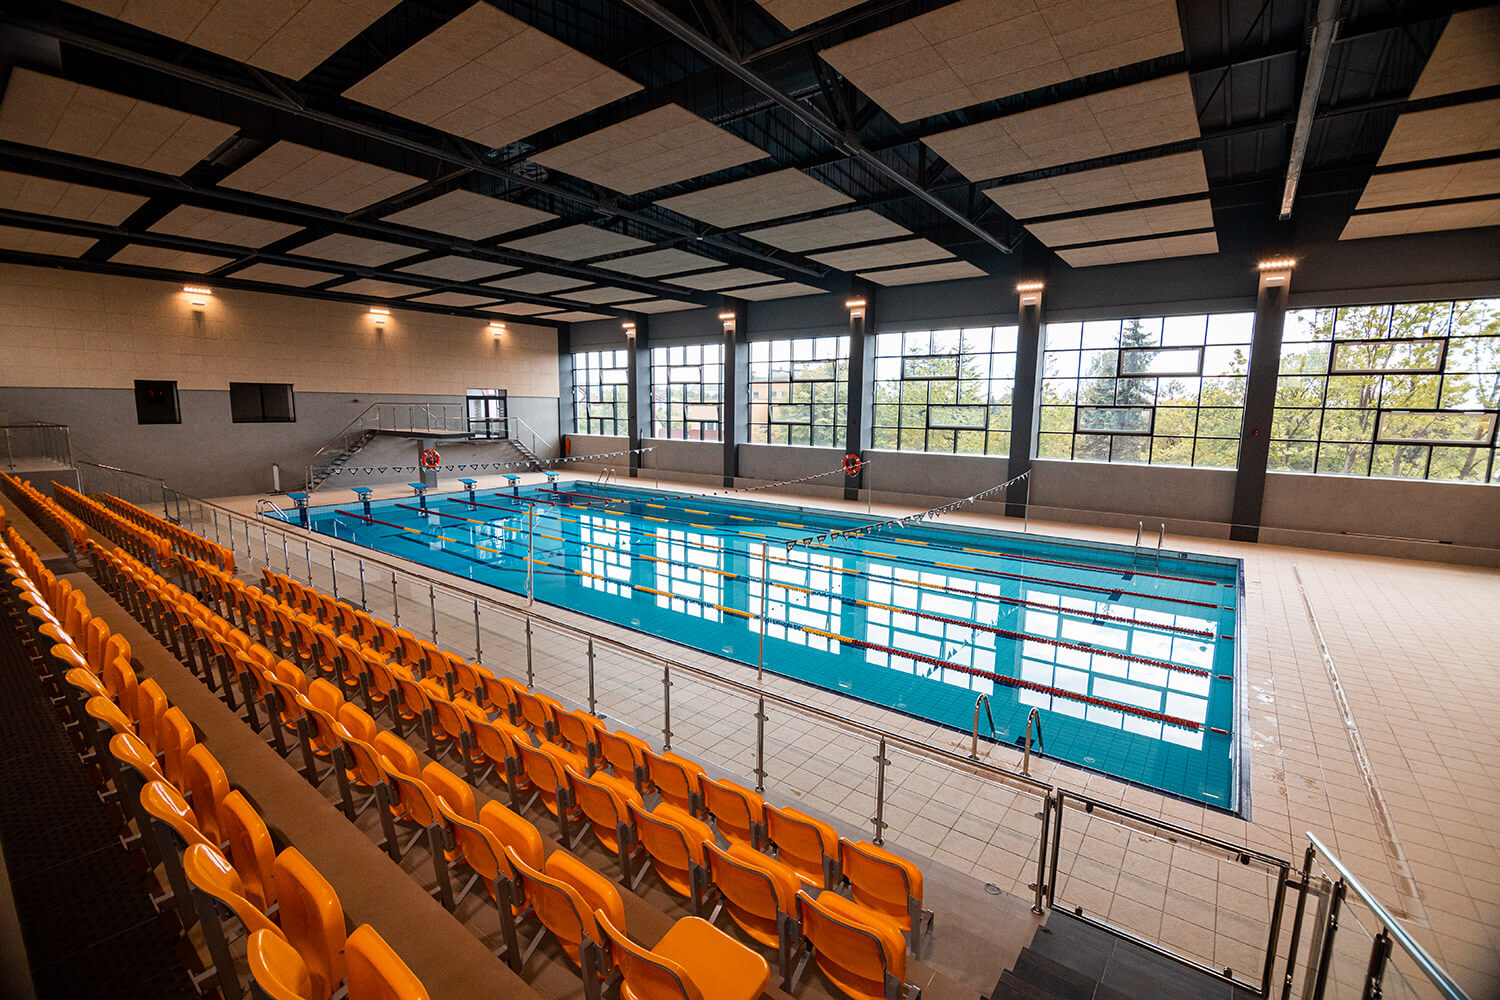 Widok wnętrza basenu: sześć torów pływackich oraz miejsca dla widowni po lewej stronie obiektu. Naprzeciwko widać okna obiektu.